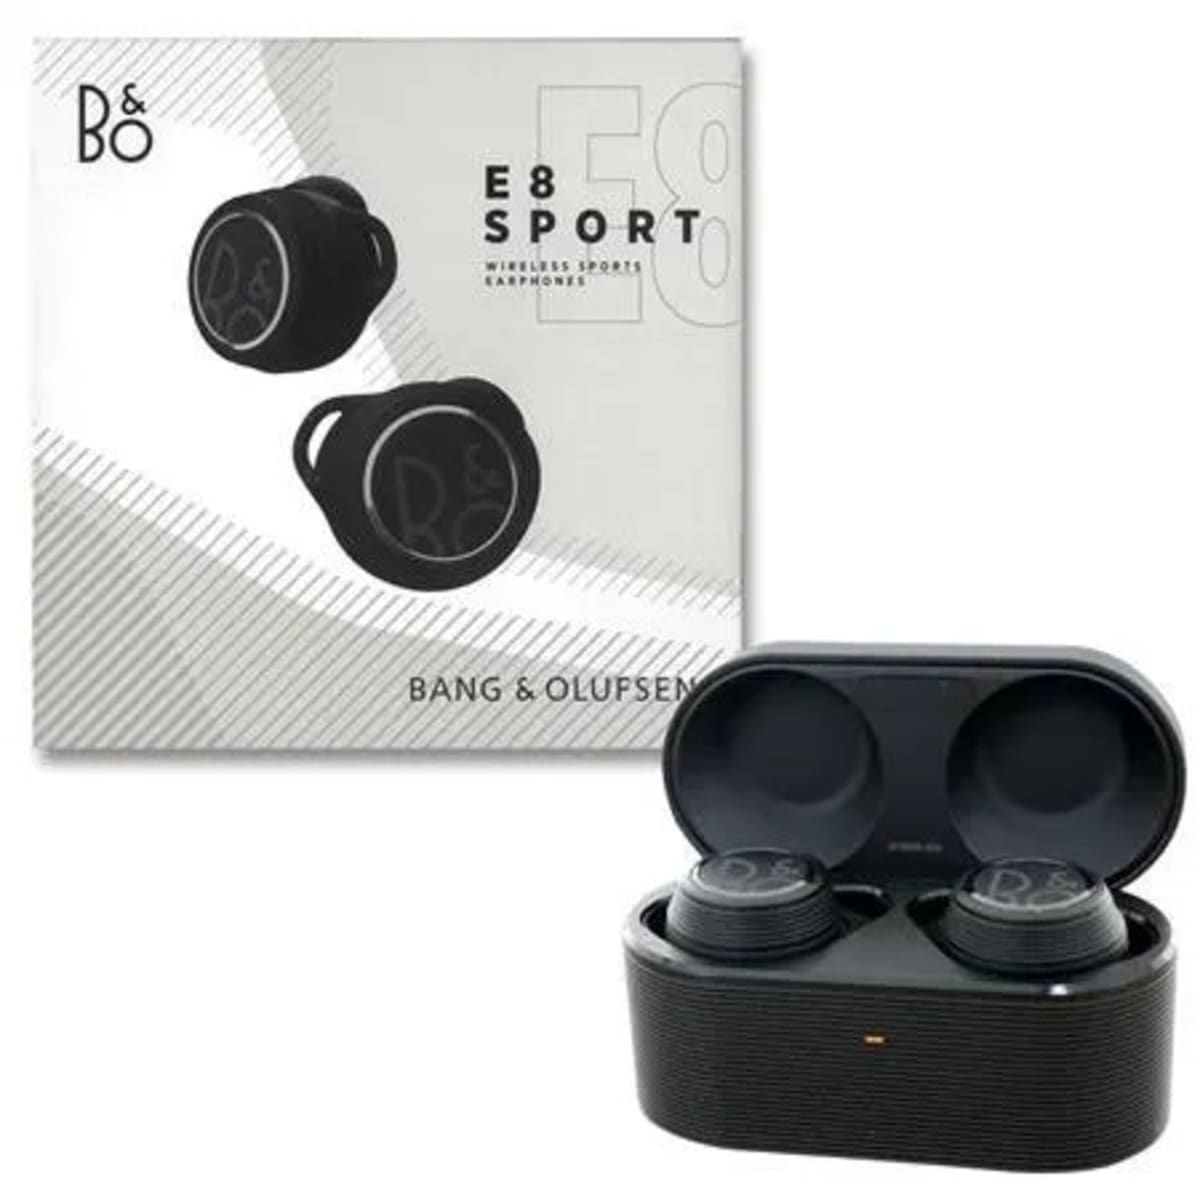 Bang & Olufsen Beoplay E8 Sport - True Wireless Sports Earphones